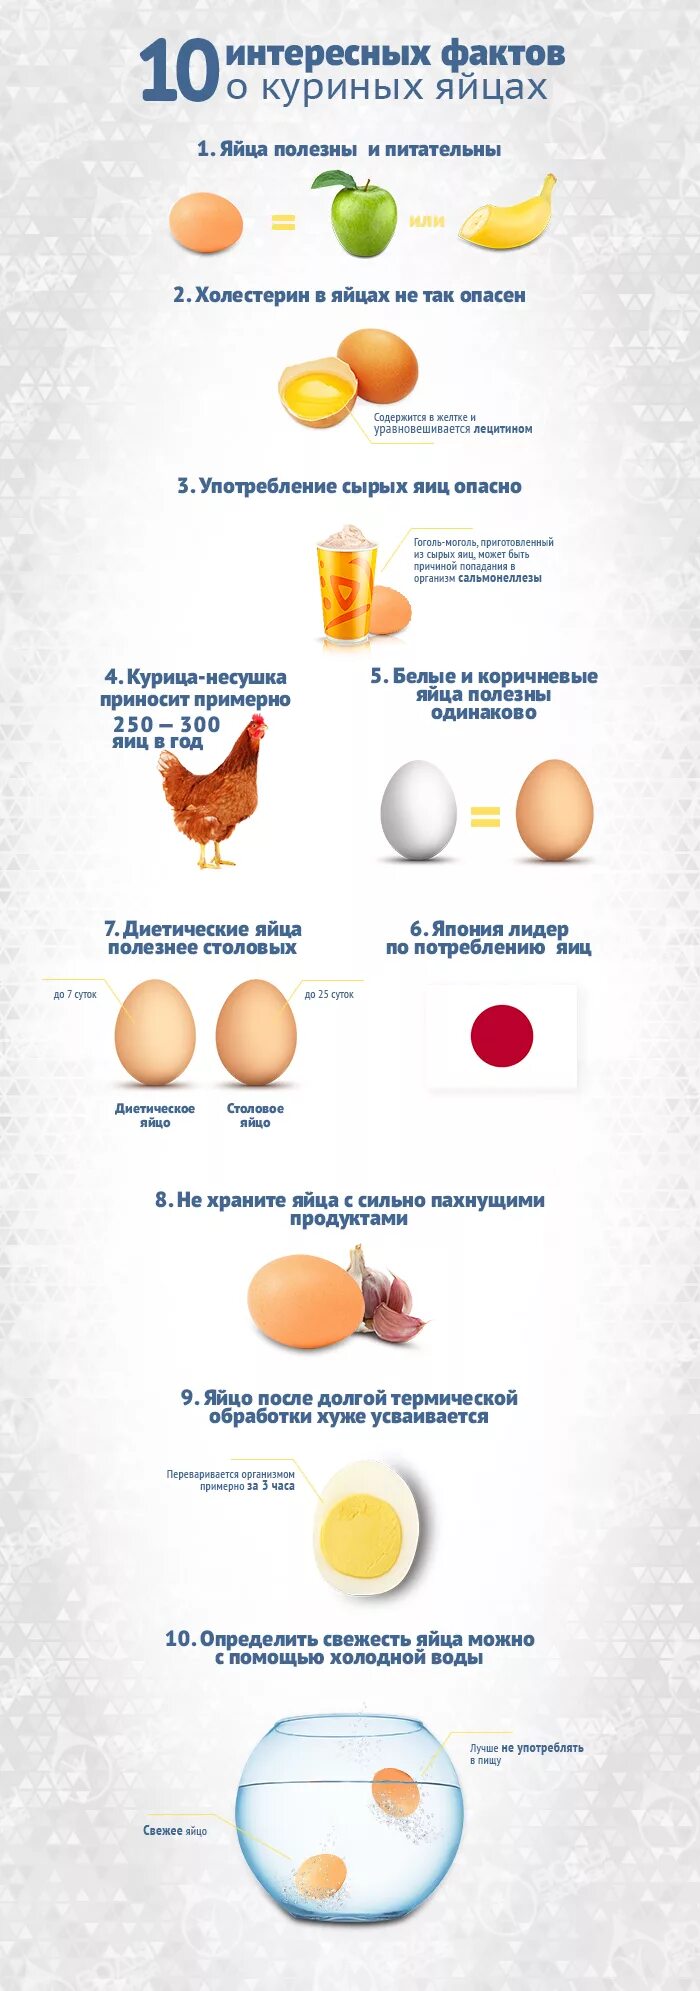 Как получить сильнейшее яйцо. Факты о яйцах. Факты о яйцах куриных. Интересные факты о яйцах. Интересные факты о яйцах курицы.